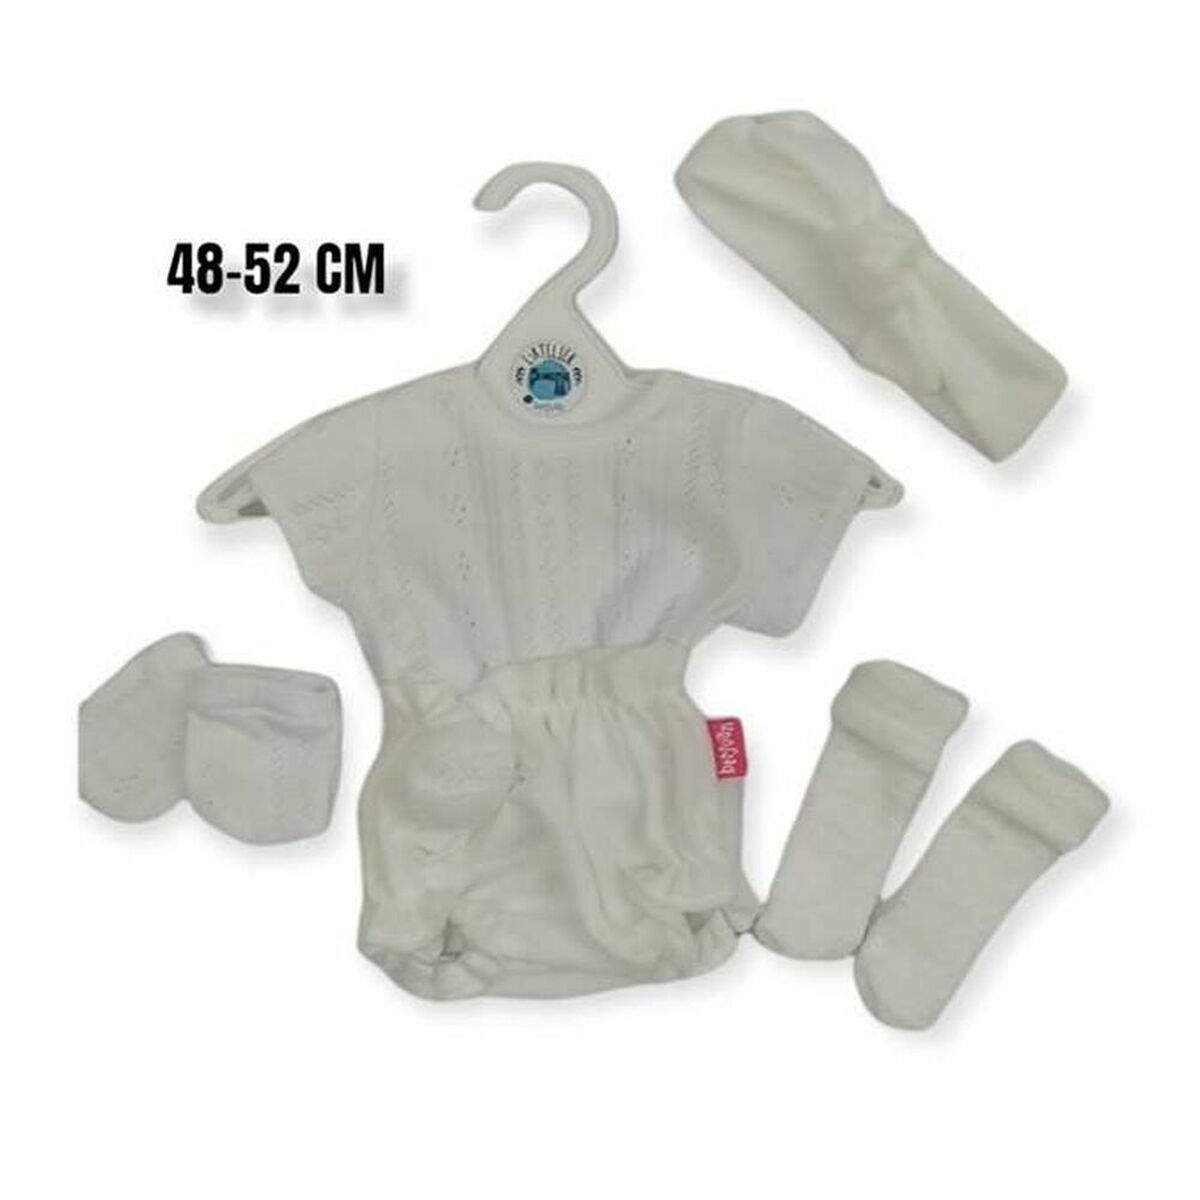 Doll's clothes Berjuan 5038-22